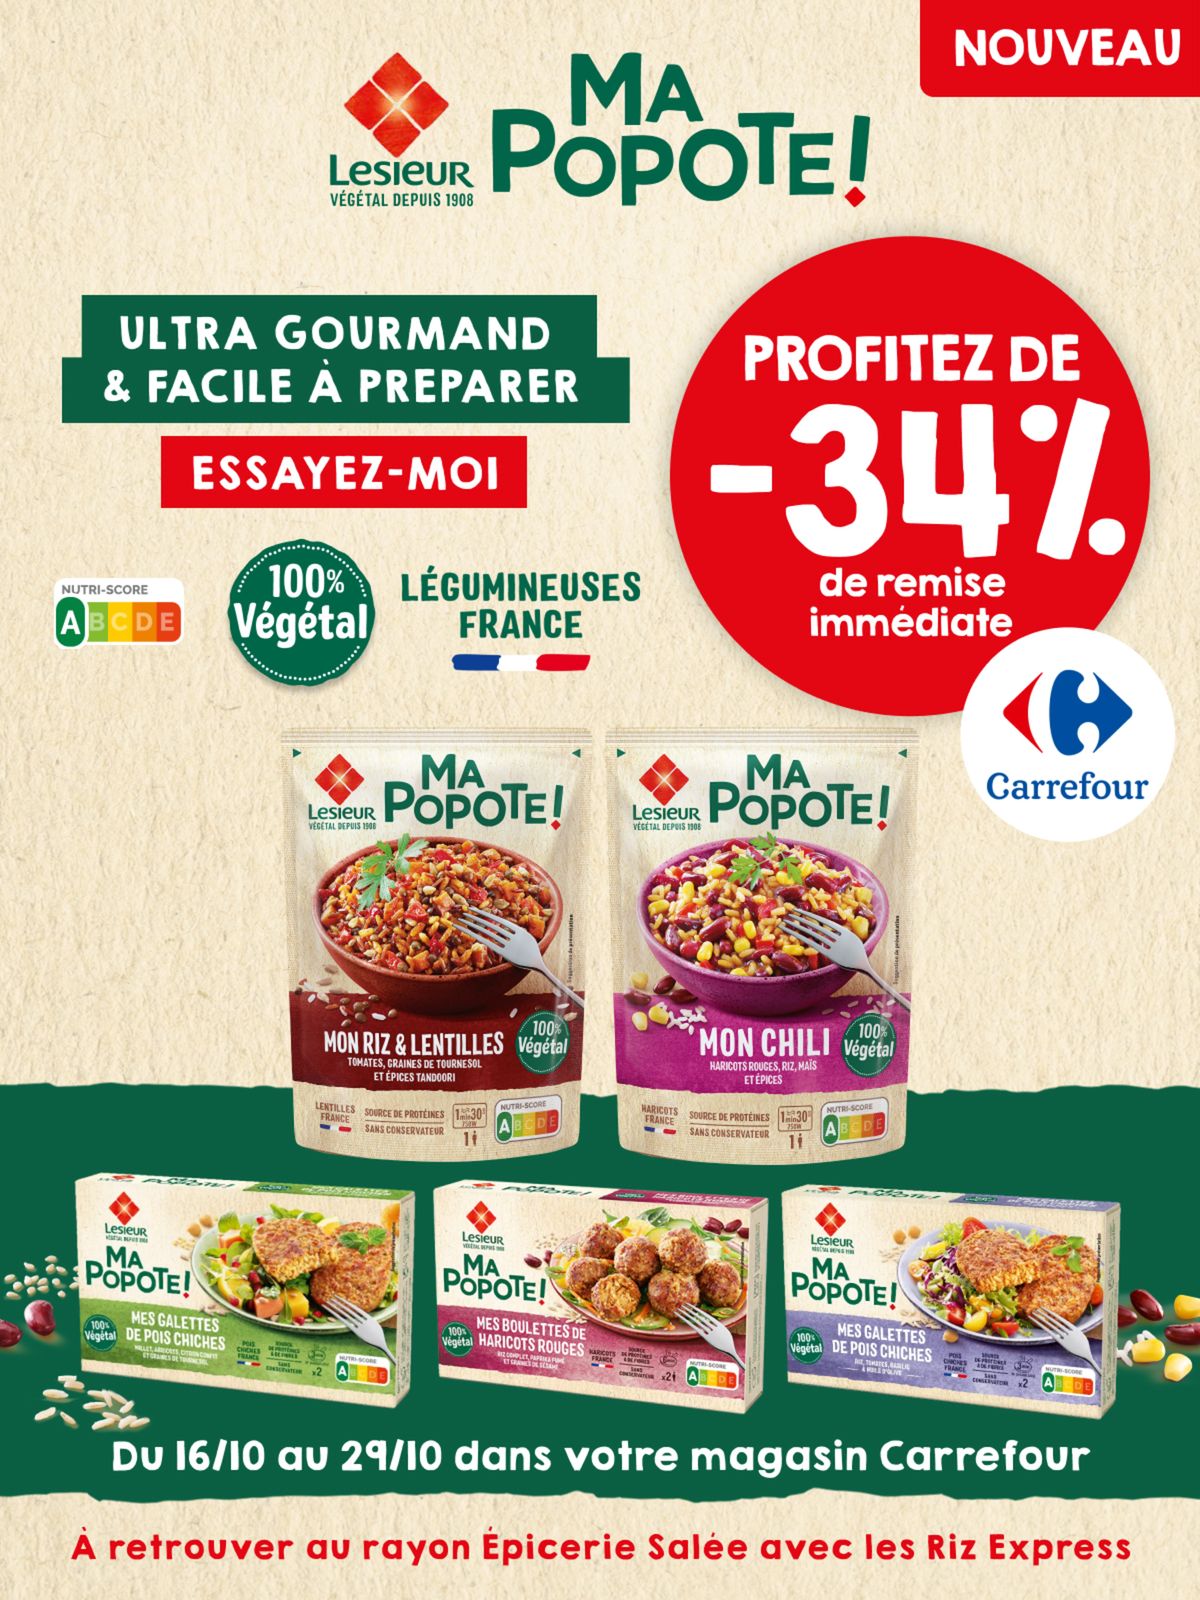 Catalogue Profitez de -34% de remise immédiate Carrefour ! , page 00001